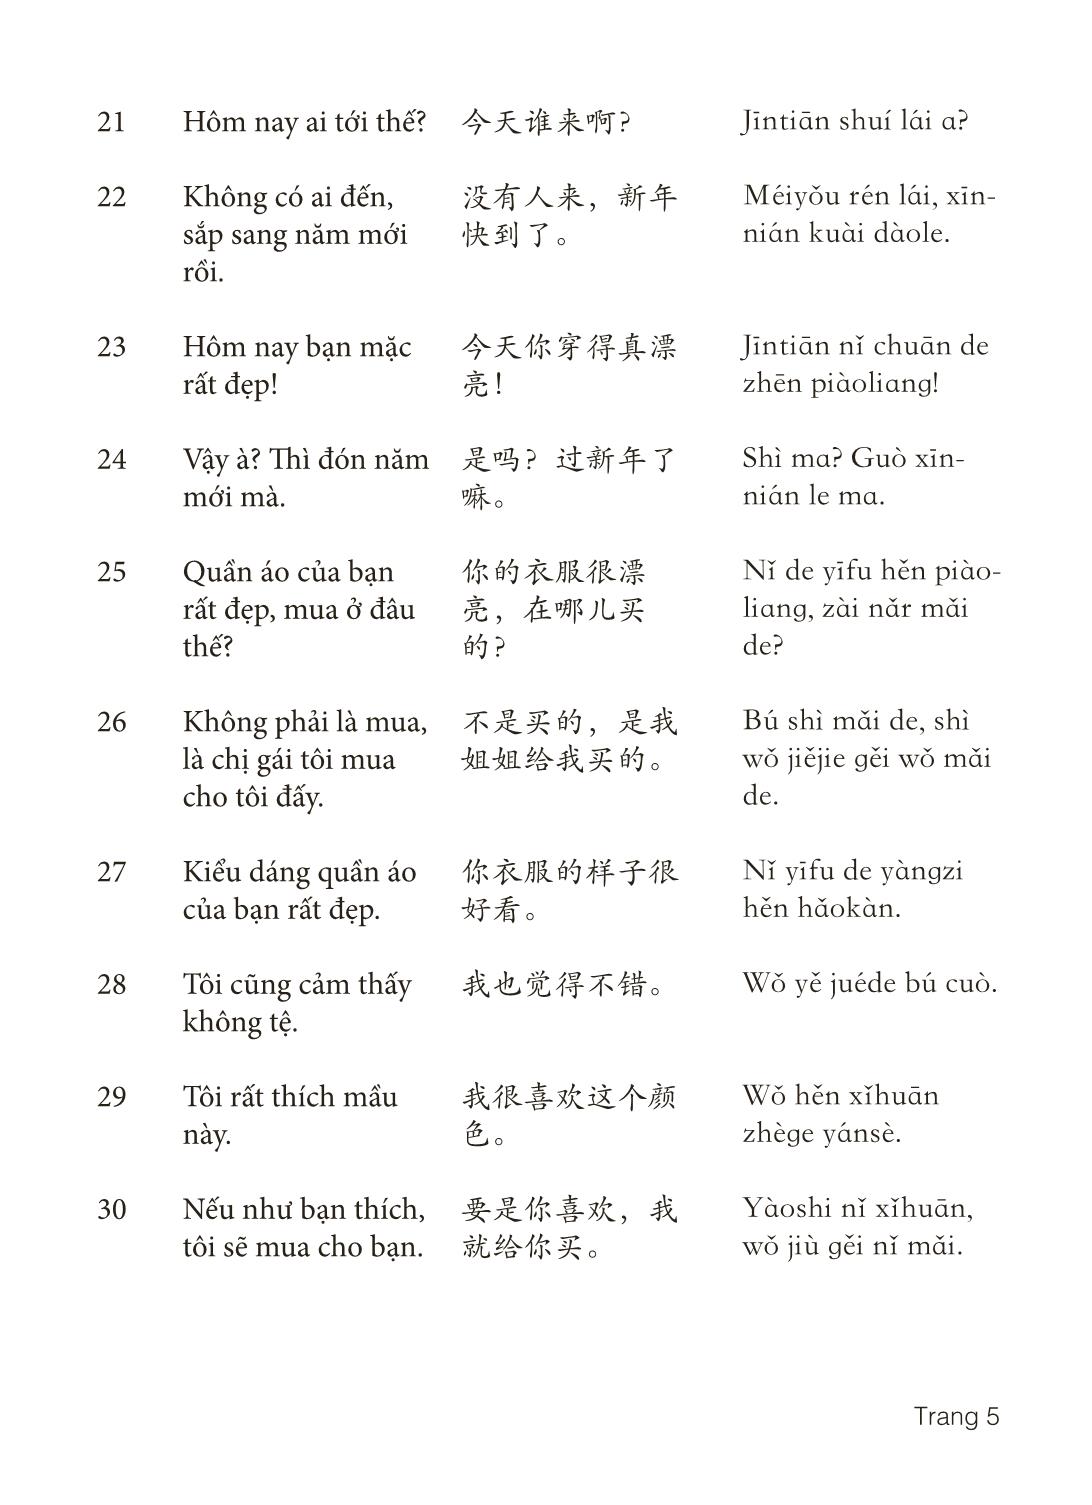 3000 Câu đàm thoại tiếng Hoa - Phần 30 trang 5